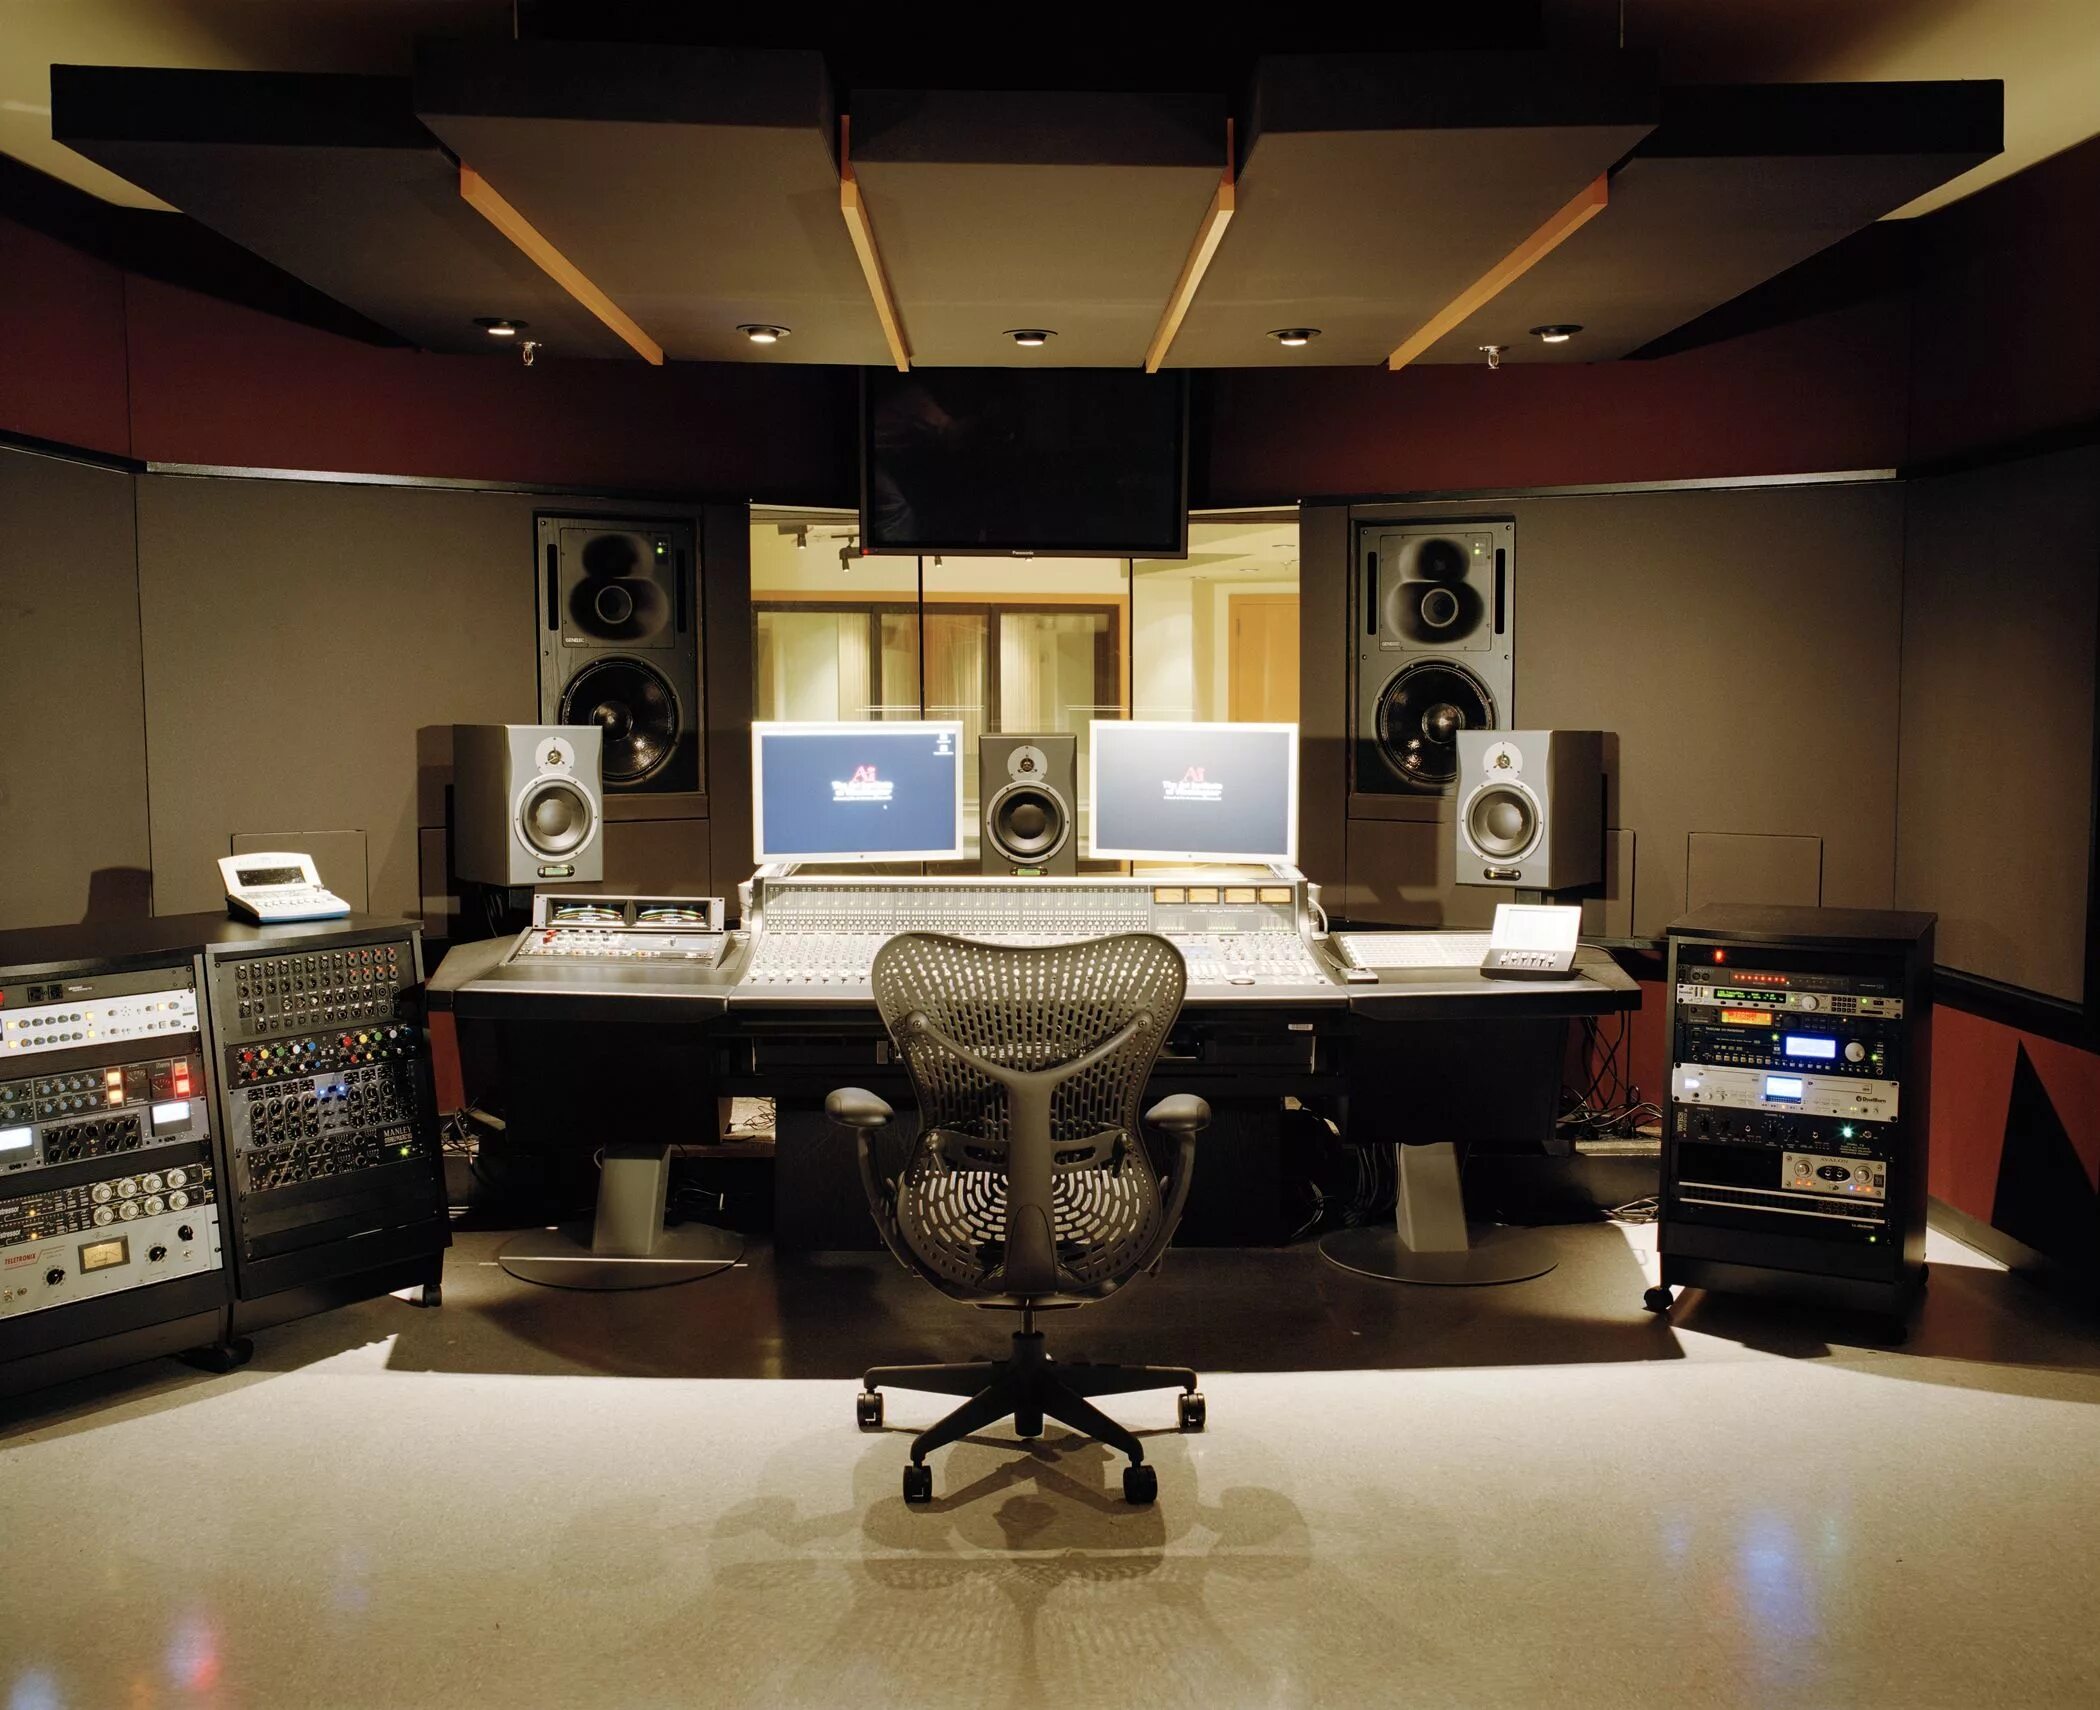 Музыкальная студия. Студия звукозаписи. Профессиональная студия звукозаписи. Комната студия звукозаписи. Sounds rooms